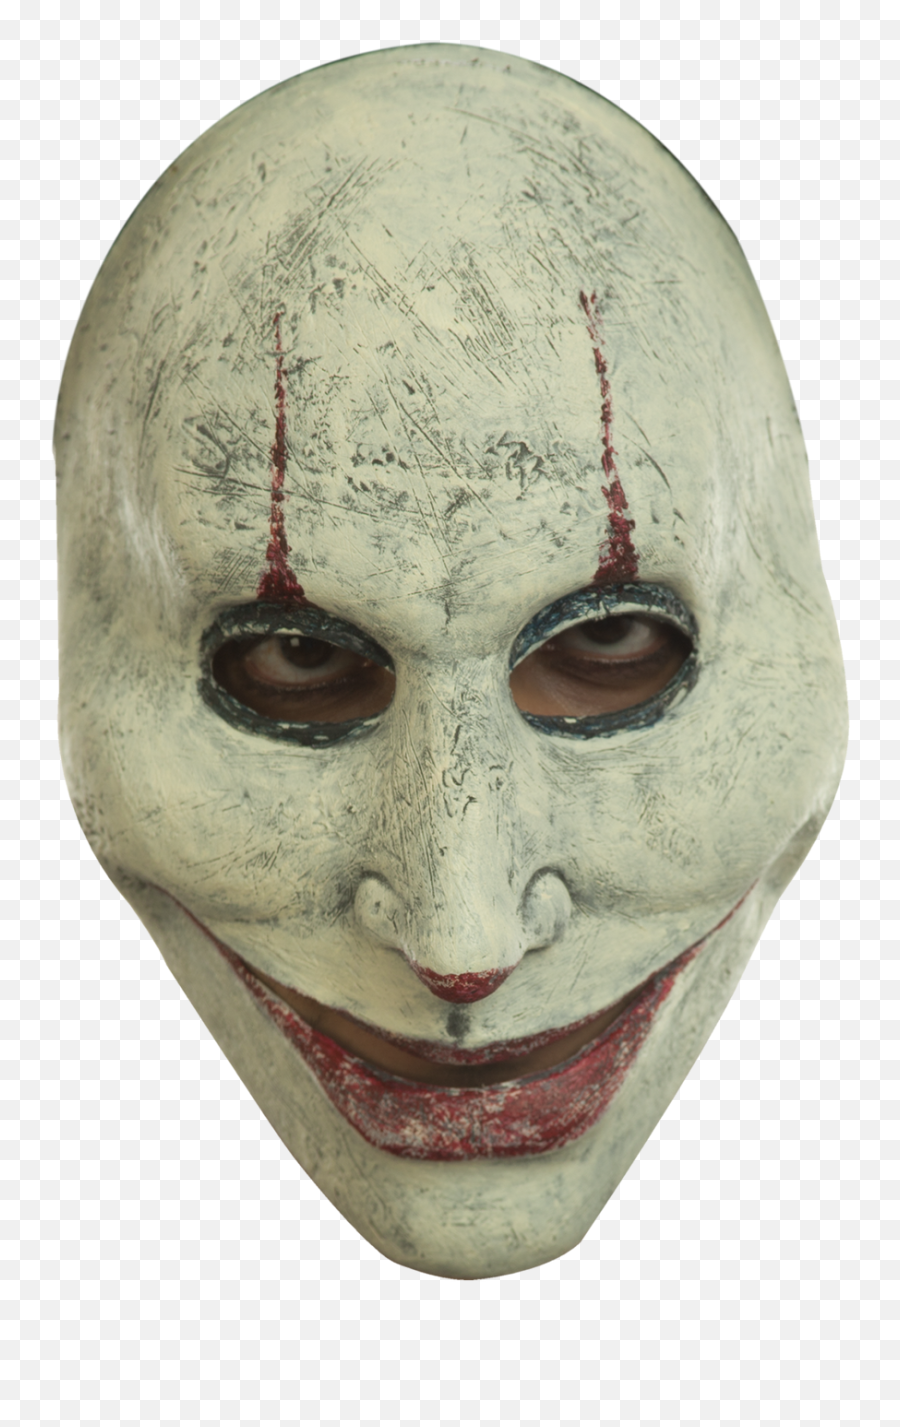 Murder Clown - Black Clown Masks Emoji,Murderer Emoticon With Text